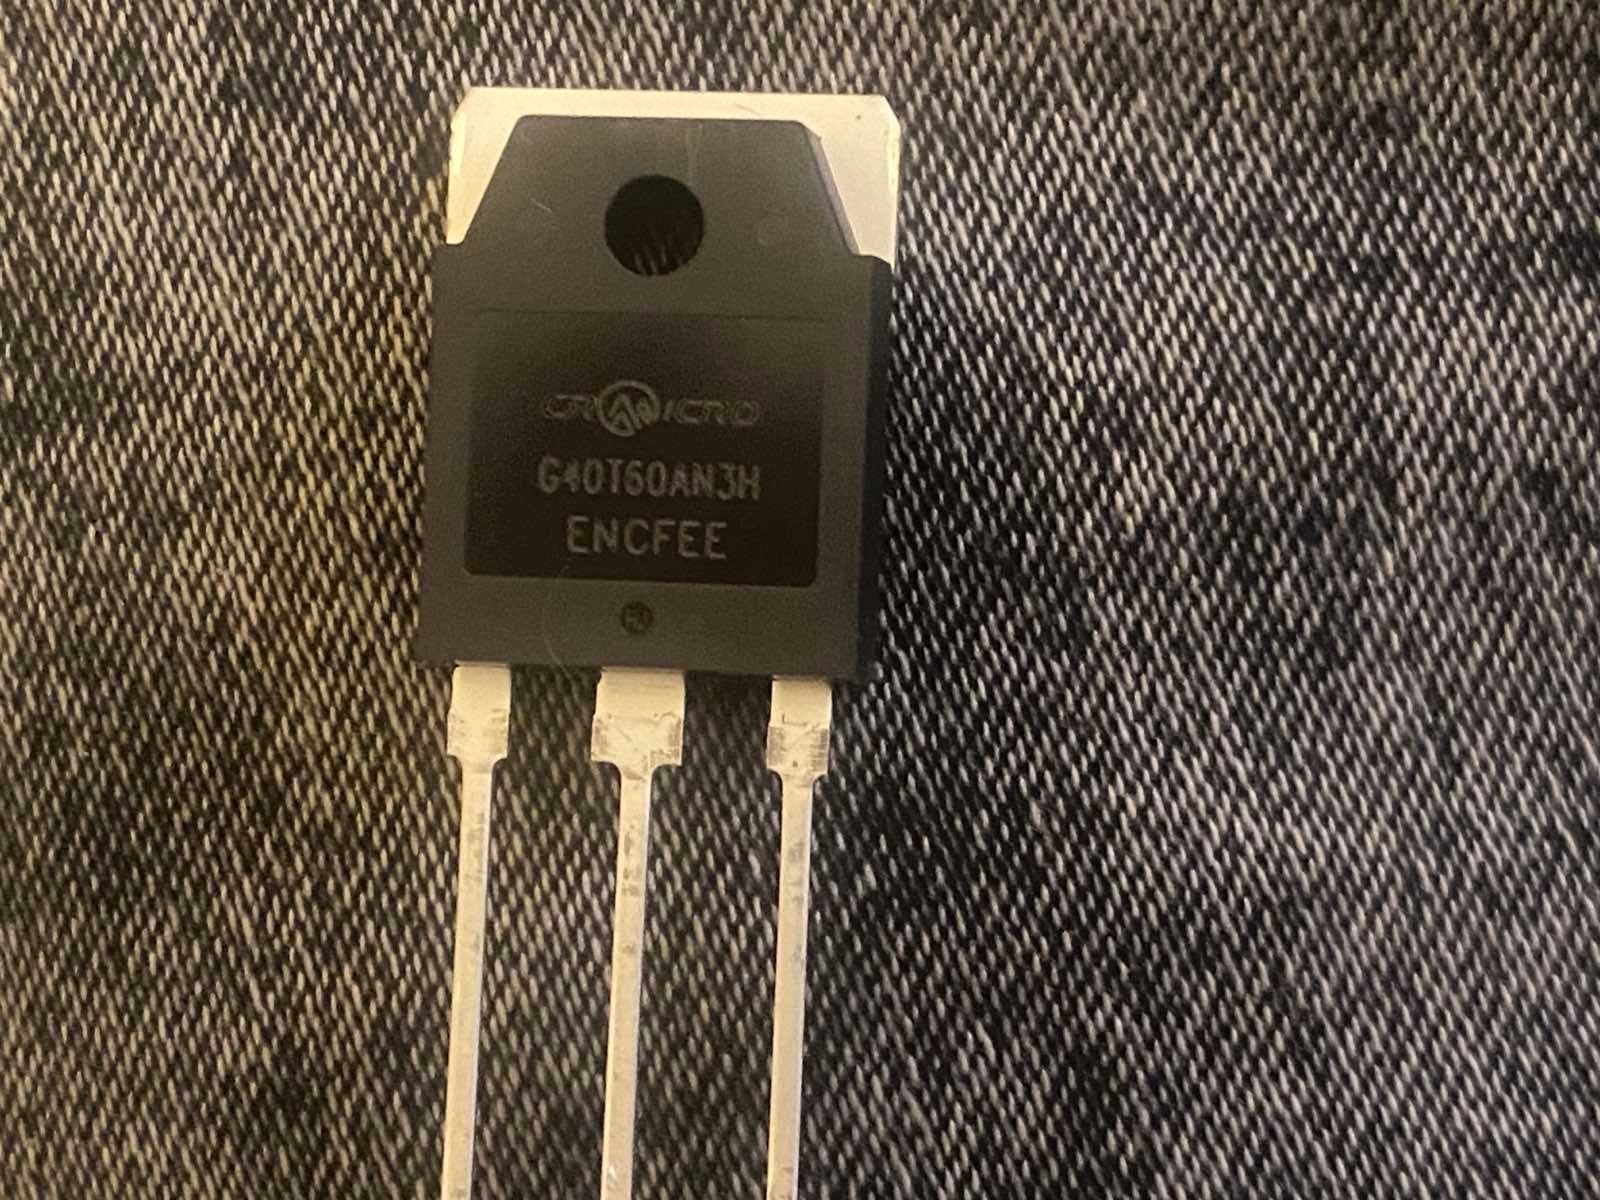 Оригінальні транзистори G40t60an3h для Ecoflow та інверторів